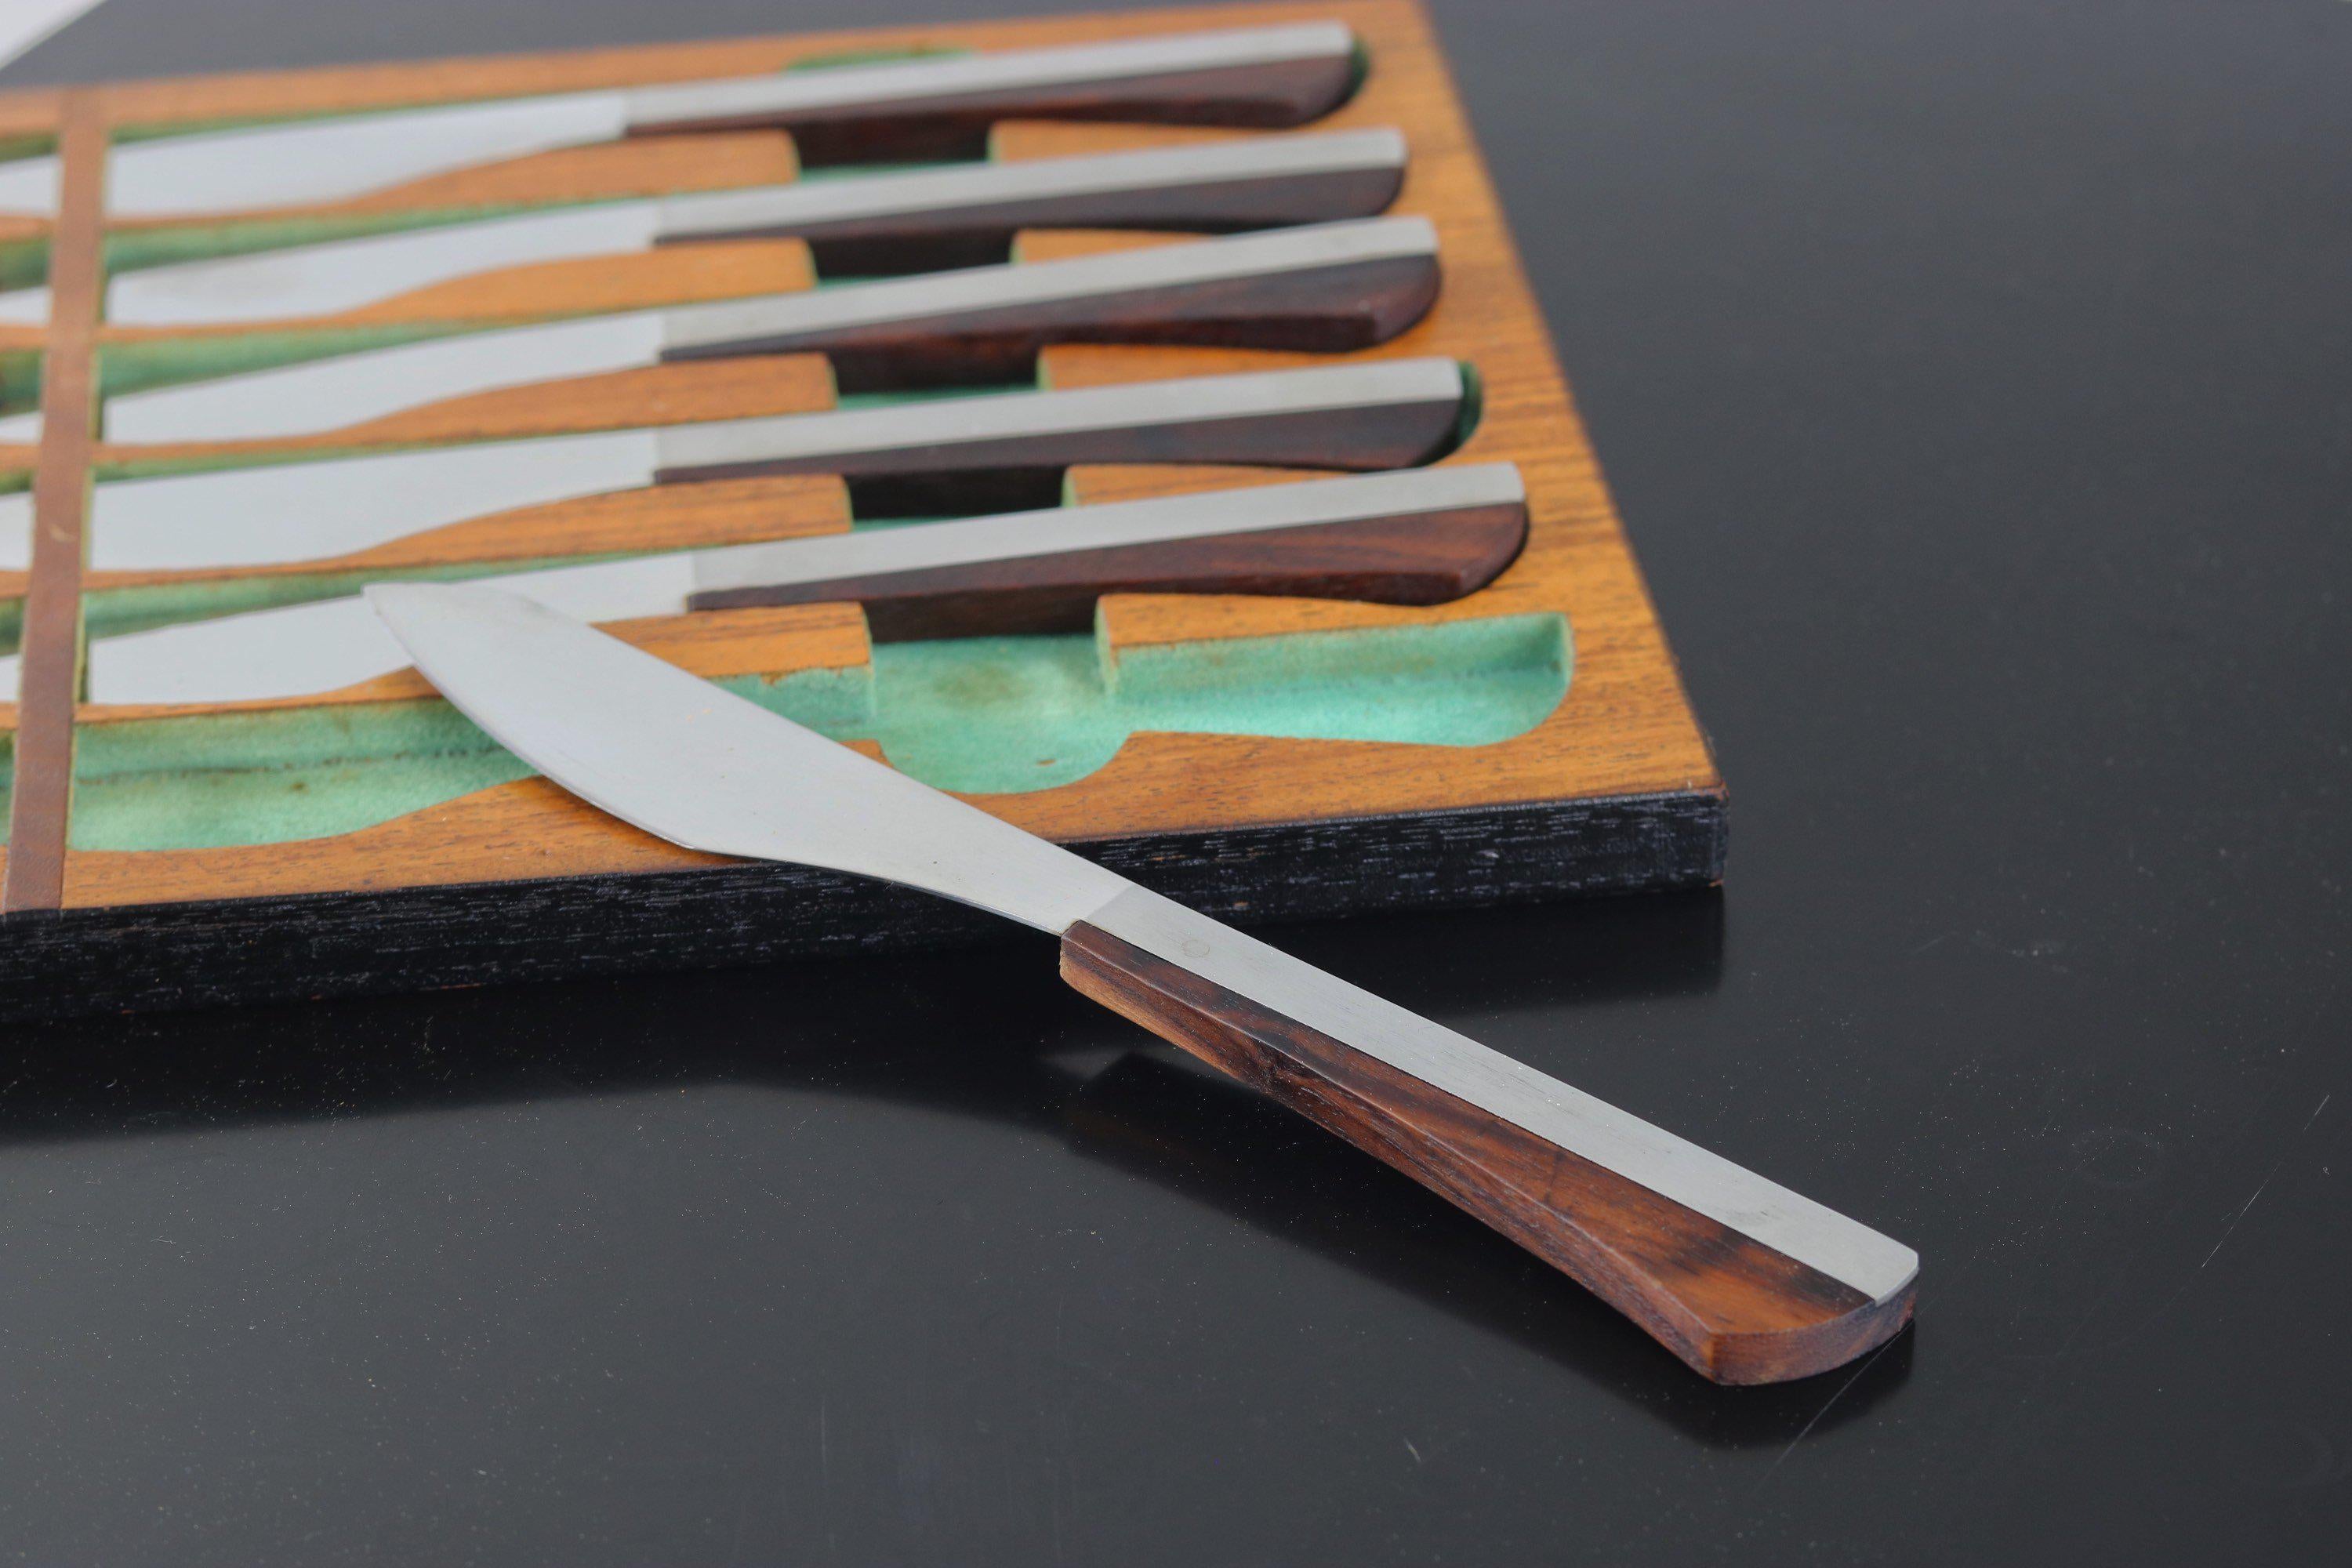 Des couverts qui attirent le regard comme de l'art ! Le jeu de six couteaux est construit avec des manches en bois de rose enveloppant des lames en métal inoxydable fabriquées au Japon. L'étui pour les couteaux peut se ranger dans votre tiroir ou,